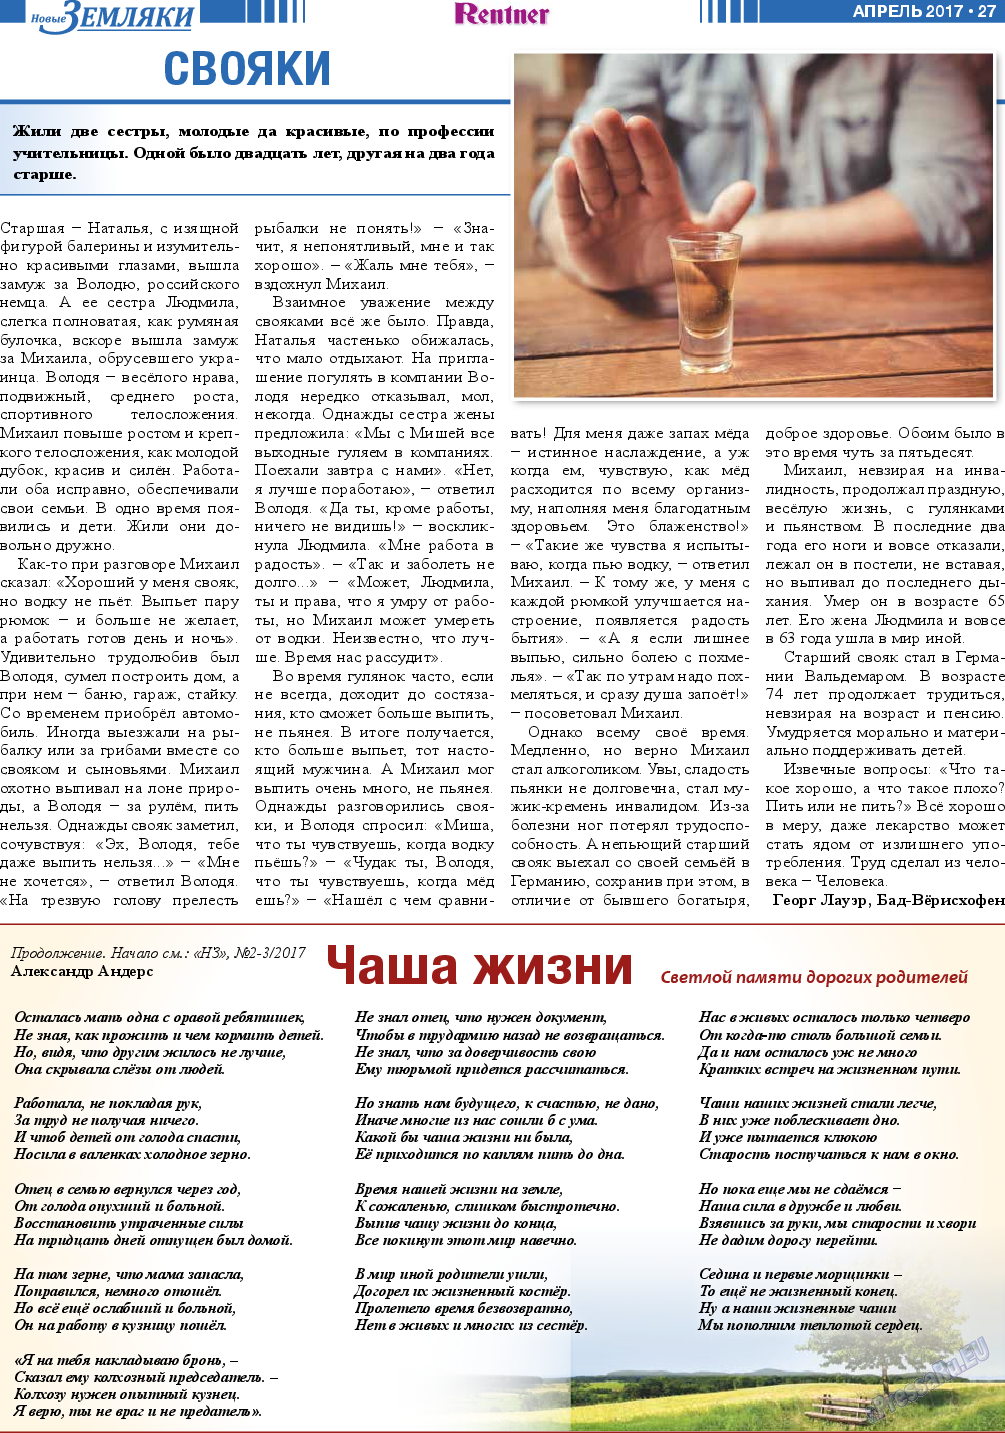 Новые Земляки, газета. 2017 №4 стр.27